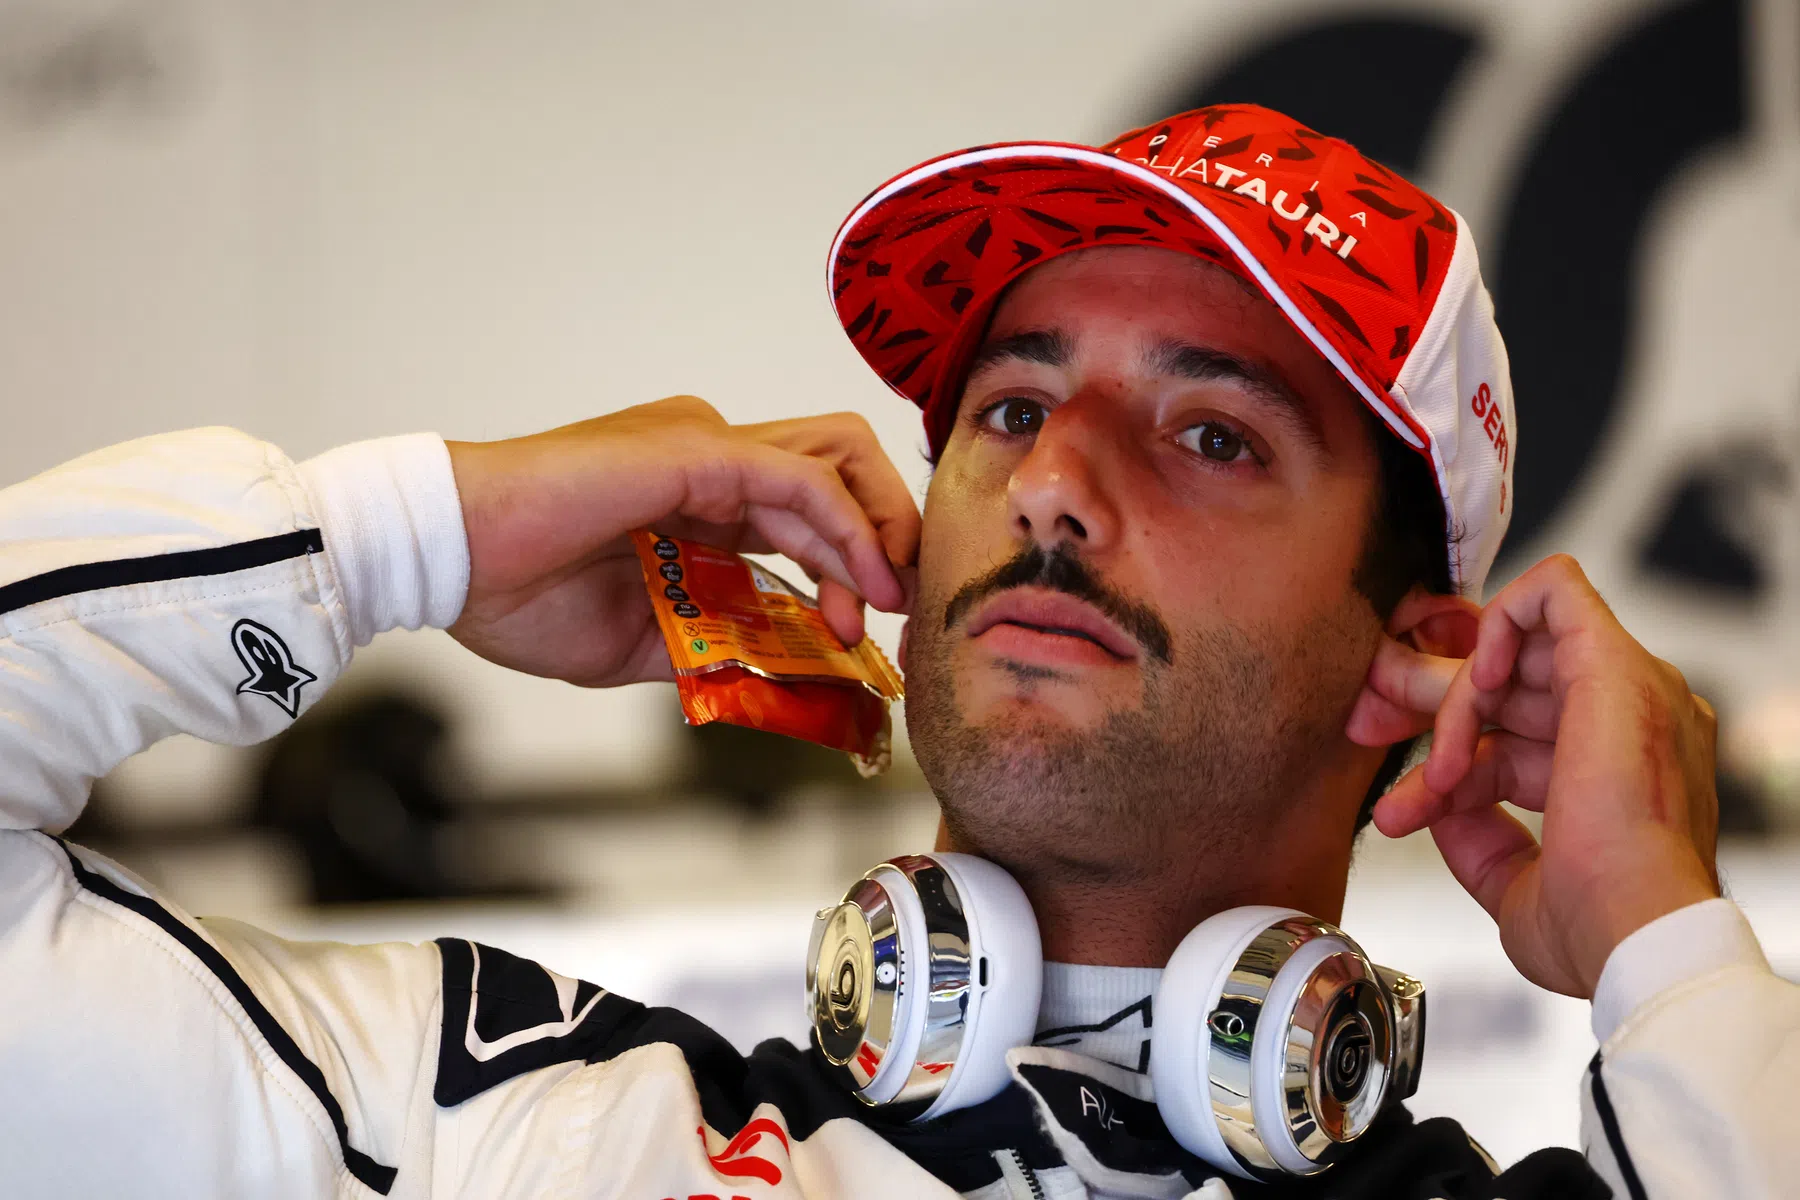 Ricciardo weet het doel: ‘Marko laten lachen staat op mijn to do-lijst'